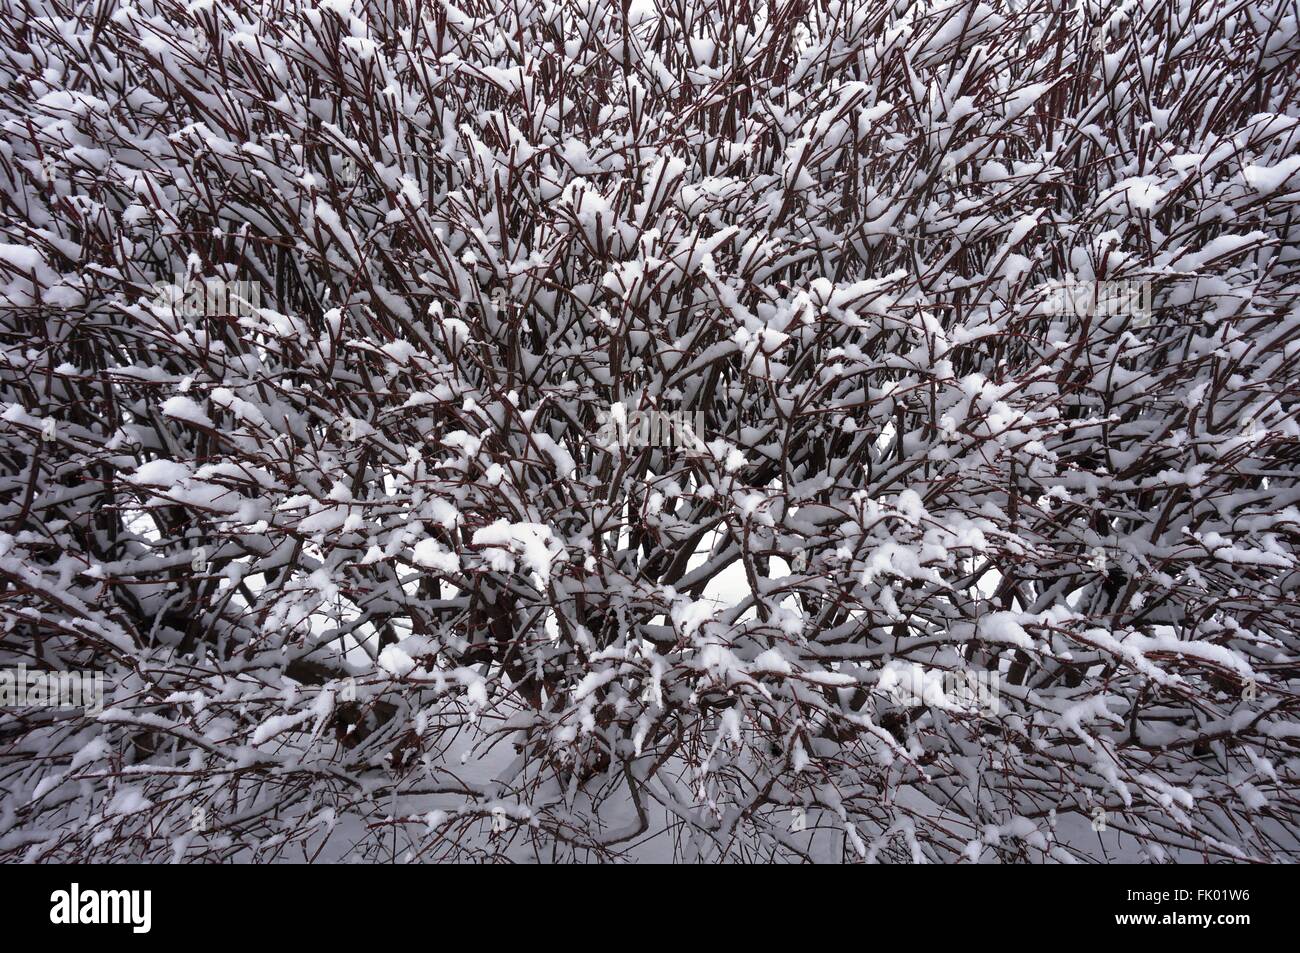 Chutes de neige sur les branches pendant une tempête hivernale Banque D'Images